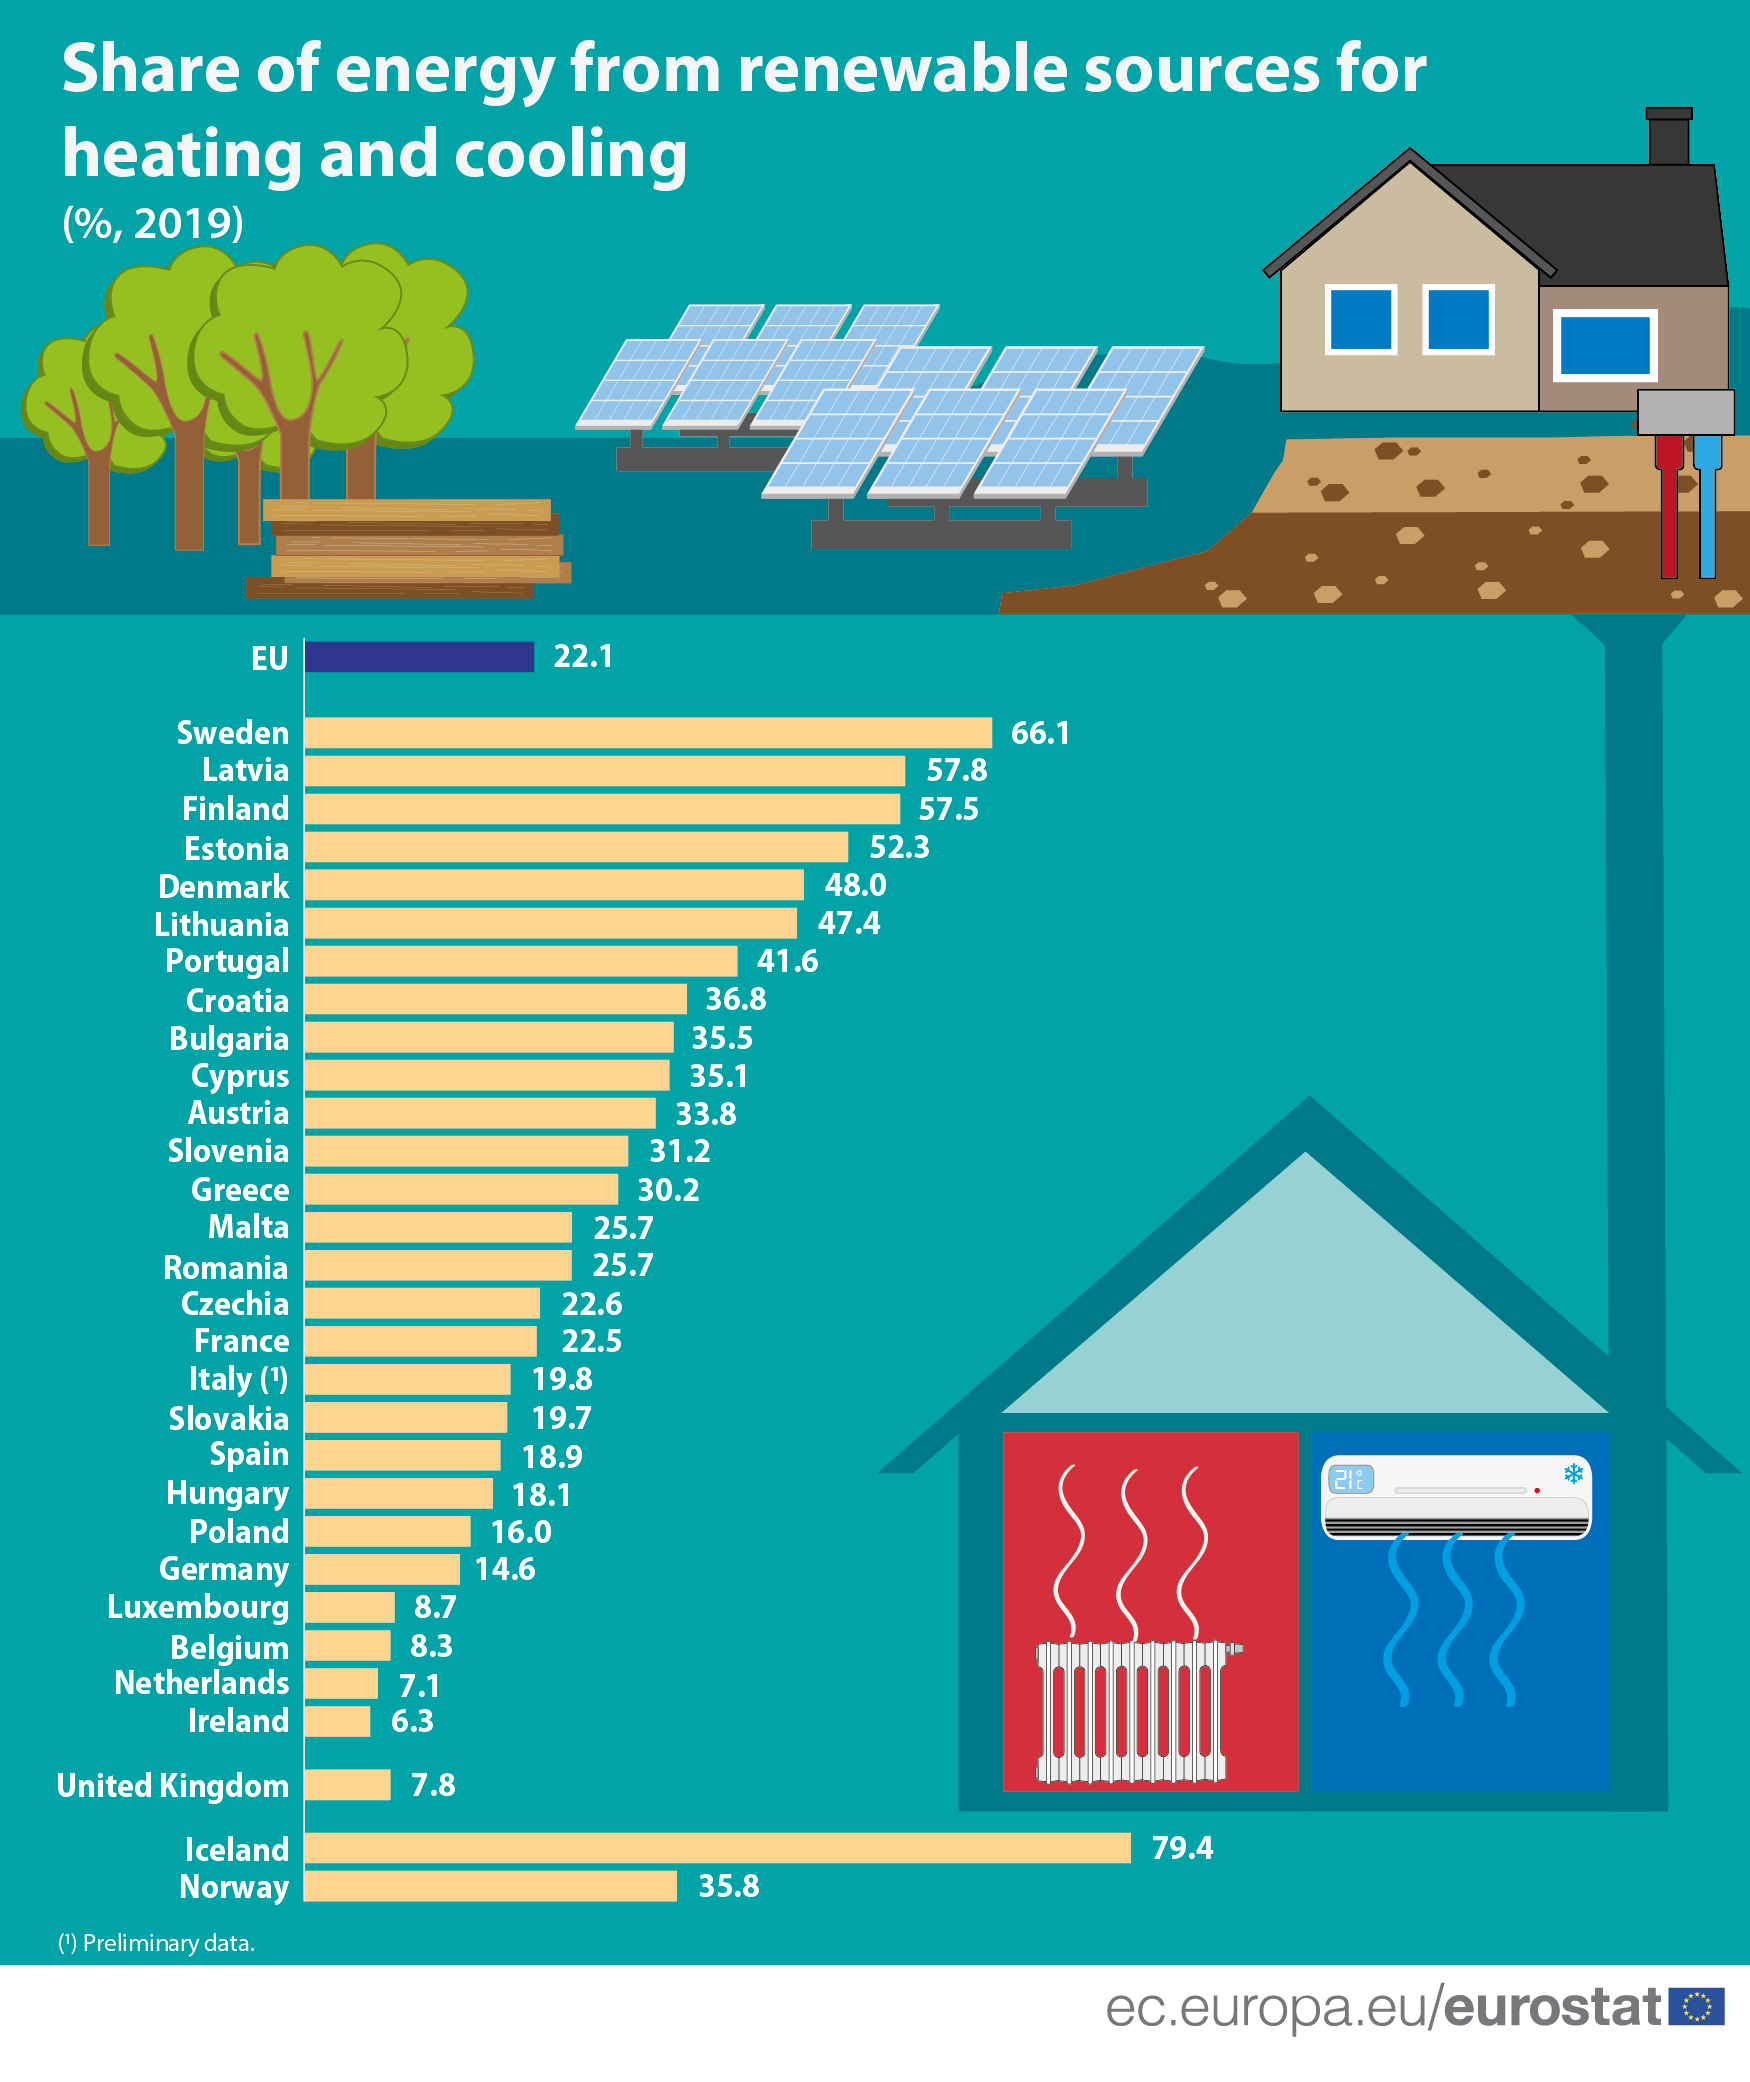 Podíl obnovitelných zdrojů na hrubé spotřebě energie na vytápění a chlazení v EU a jednotlivých členských státech. Zdroj: Evropská komise